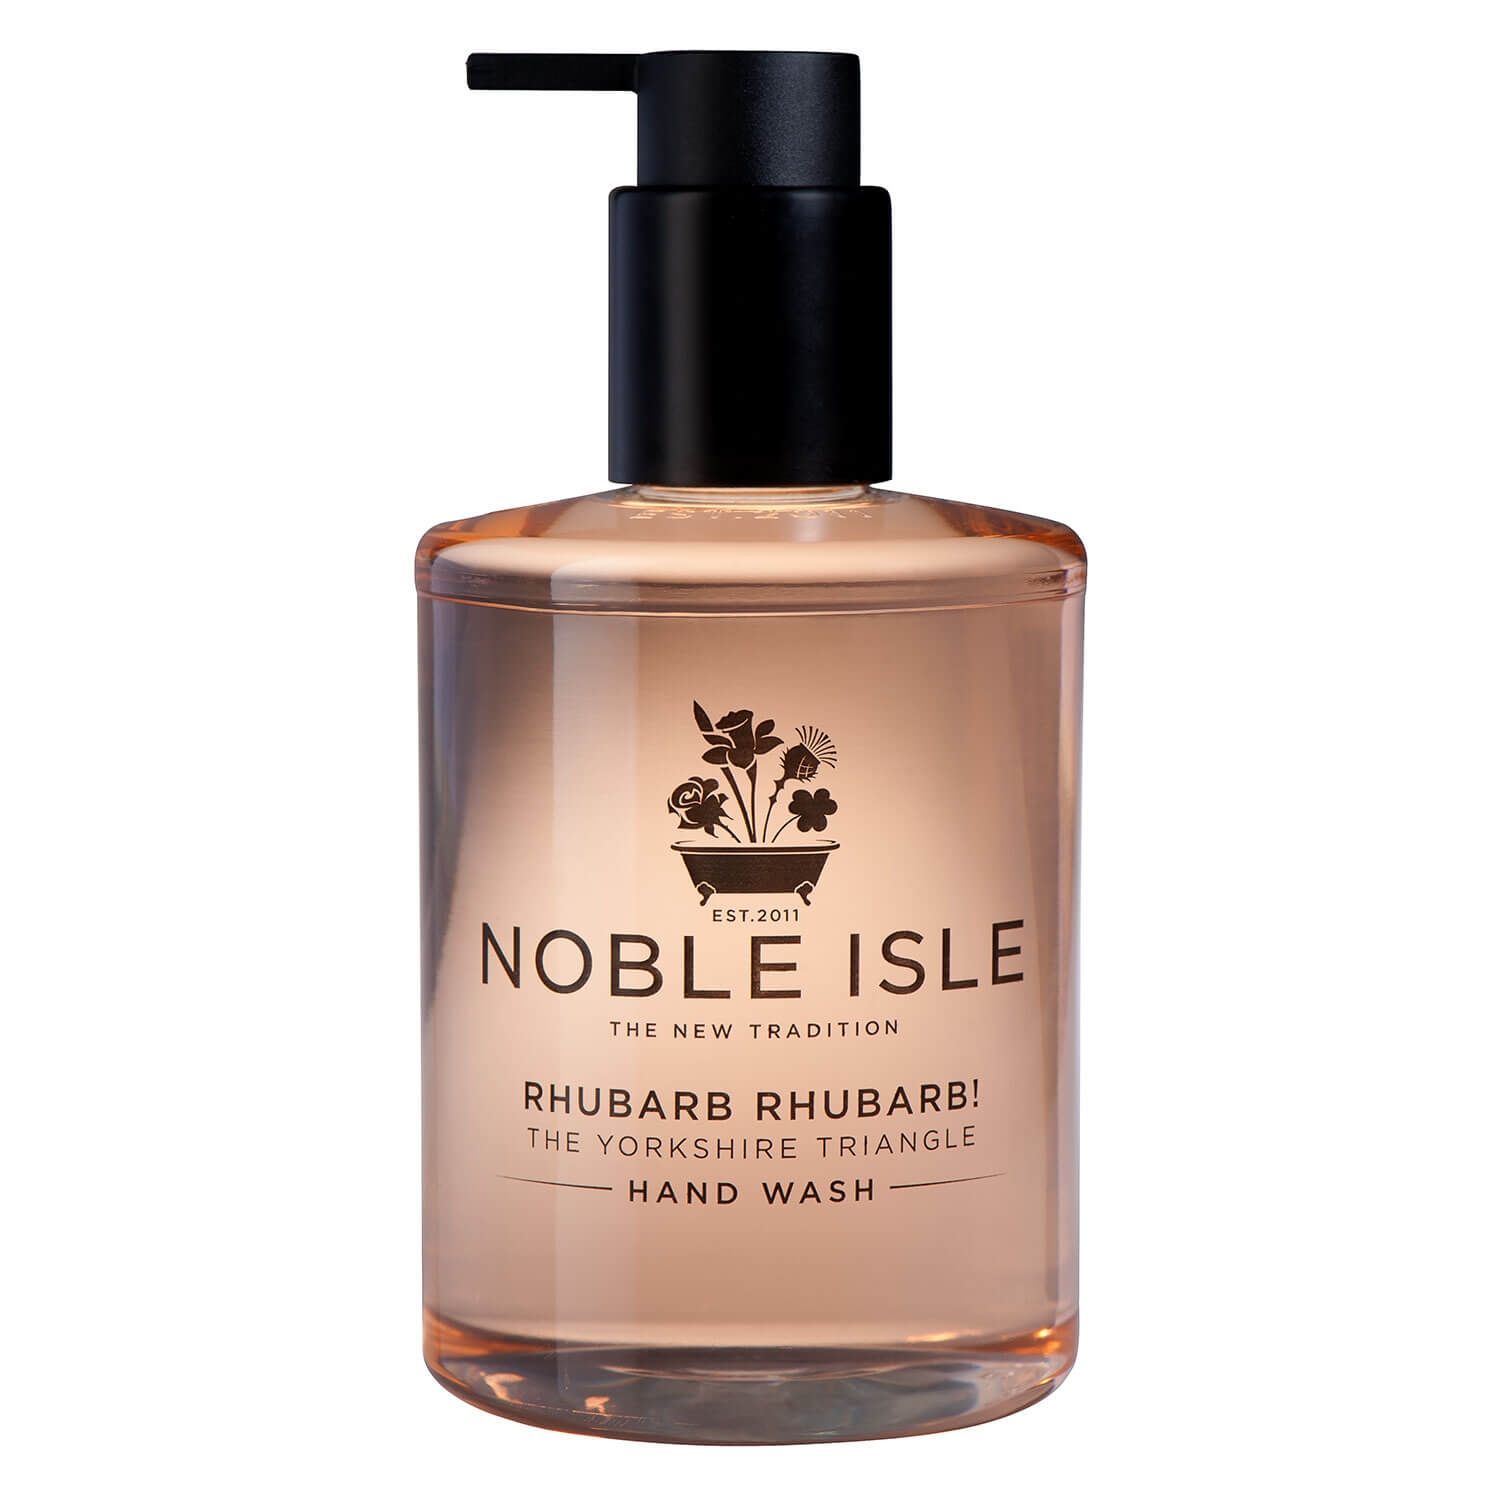 Produktbild von Noble Isle - Rhubarb Rhubarb! Hand Wash